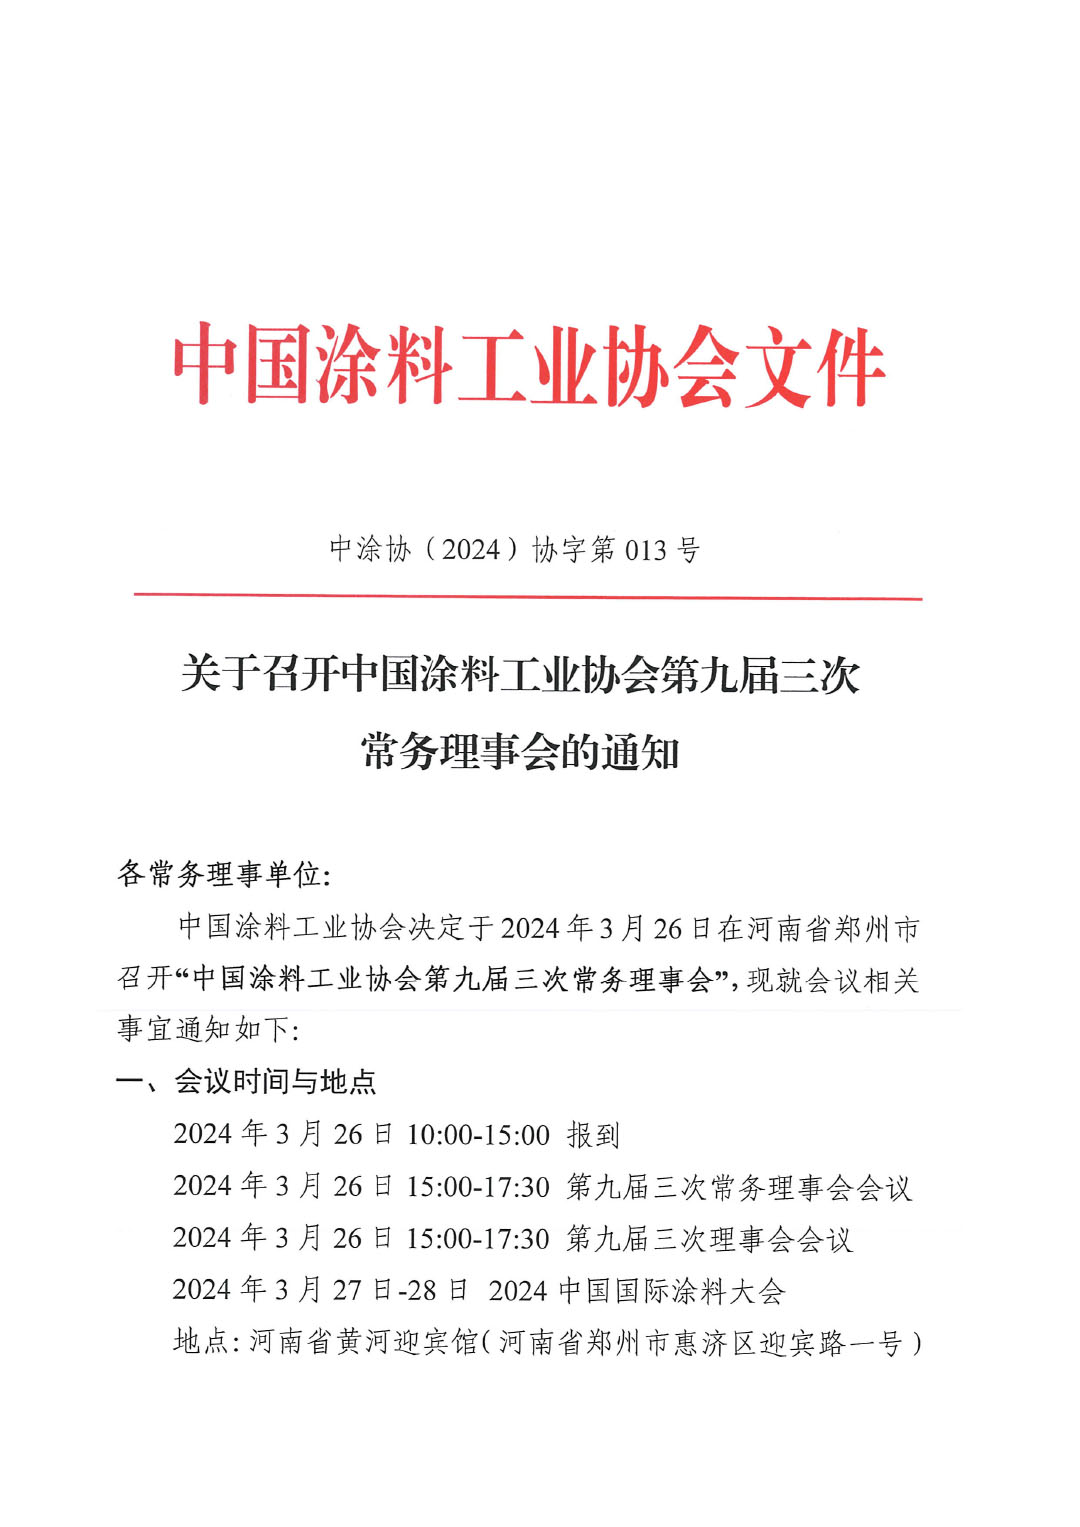 關于召開中國涂料工業協會第九屆三次常務理事會的通知-1